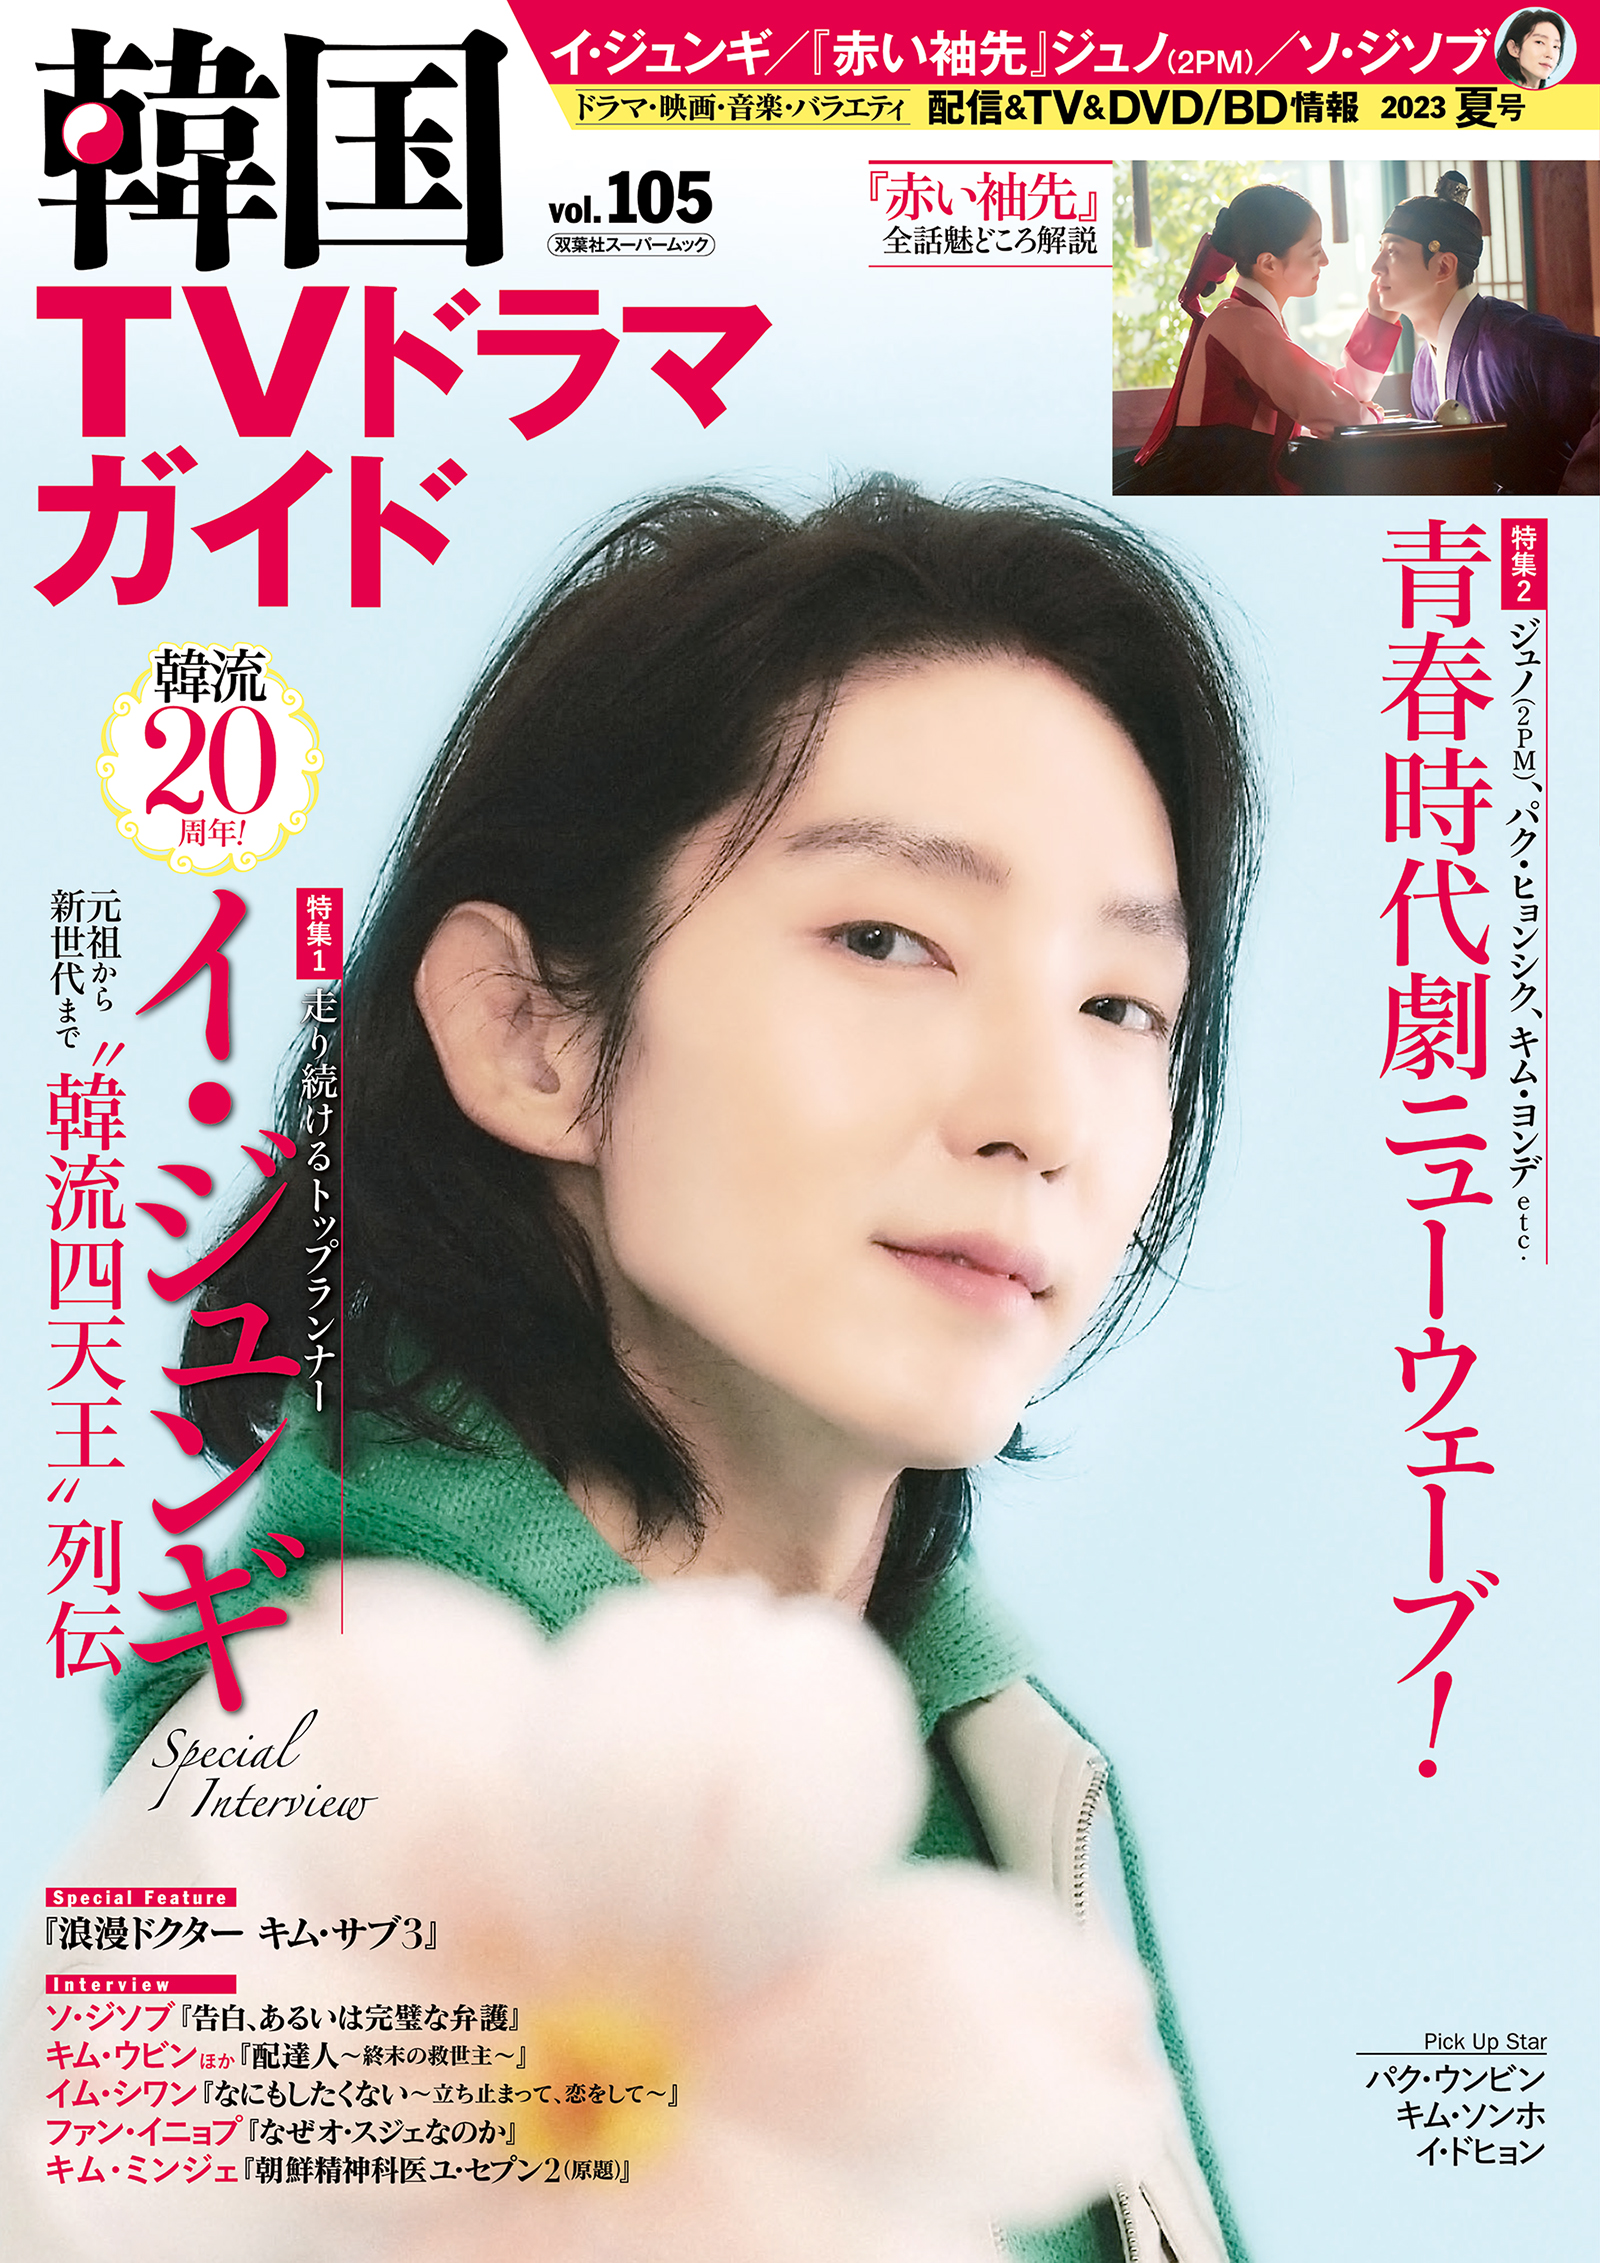 星に誓う恋 恋恋不忘 全１７巻 レンタル版DVD 全巻 ジェリー・イェン 